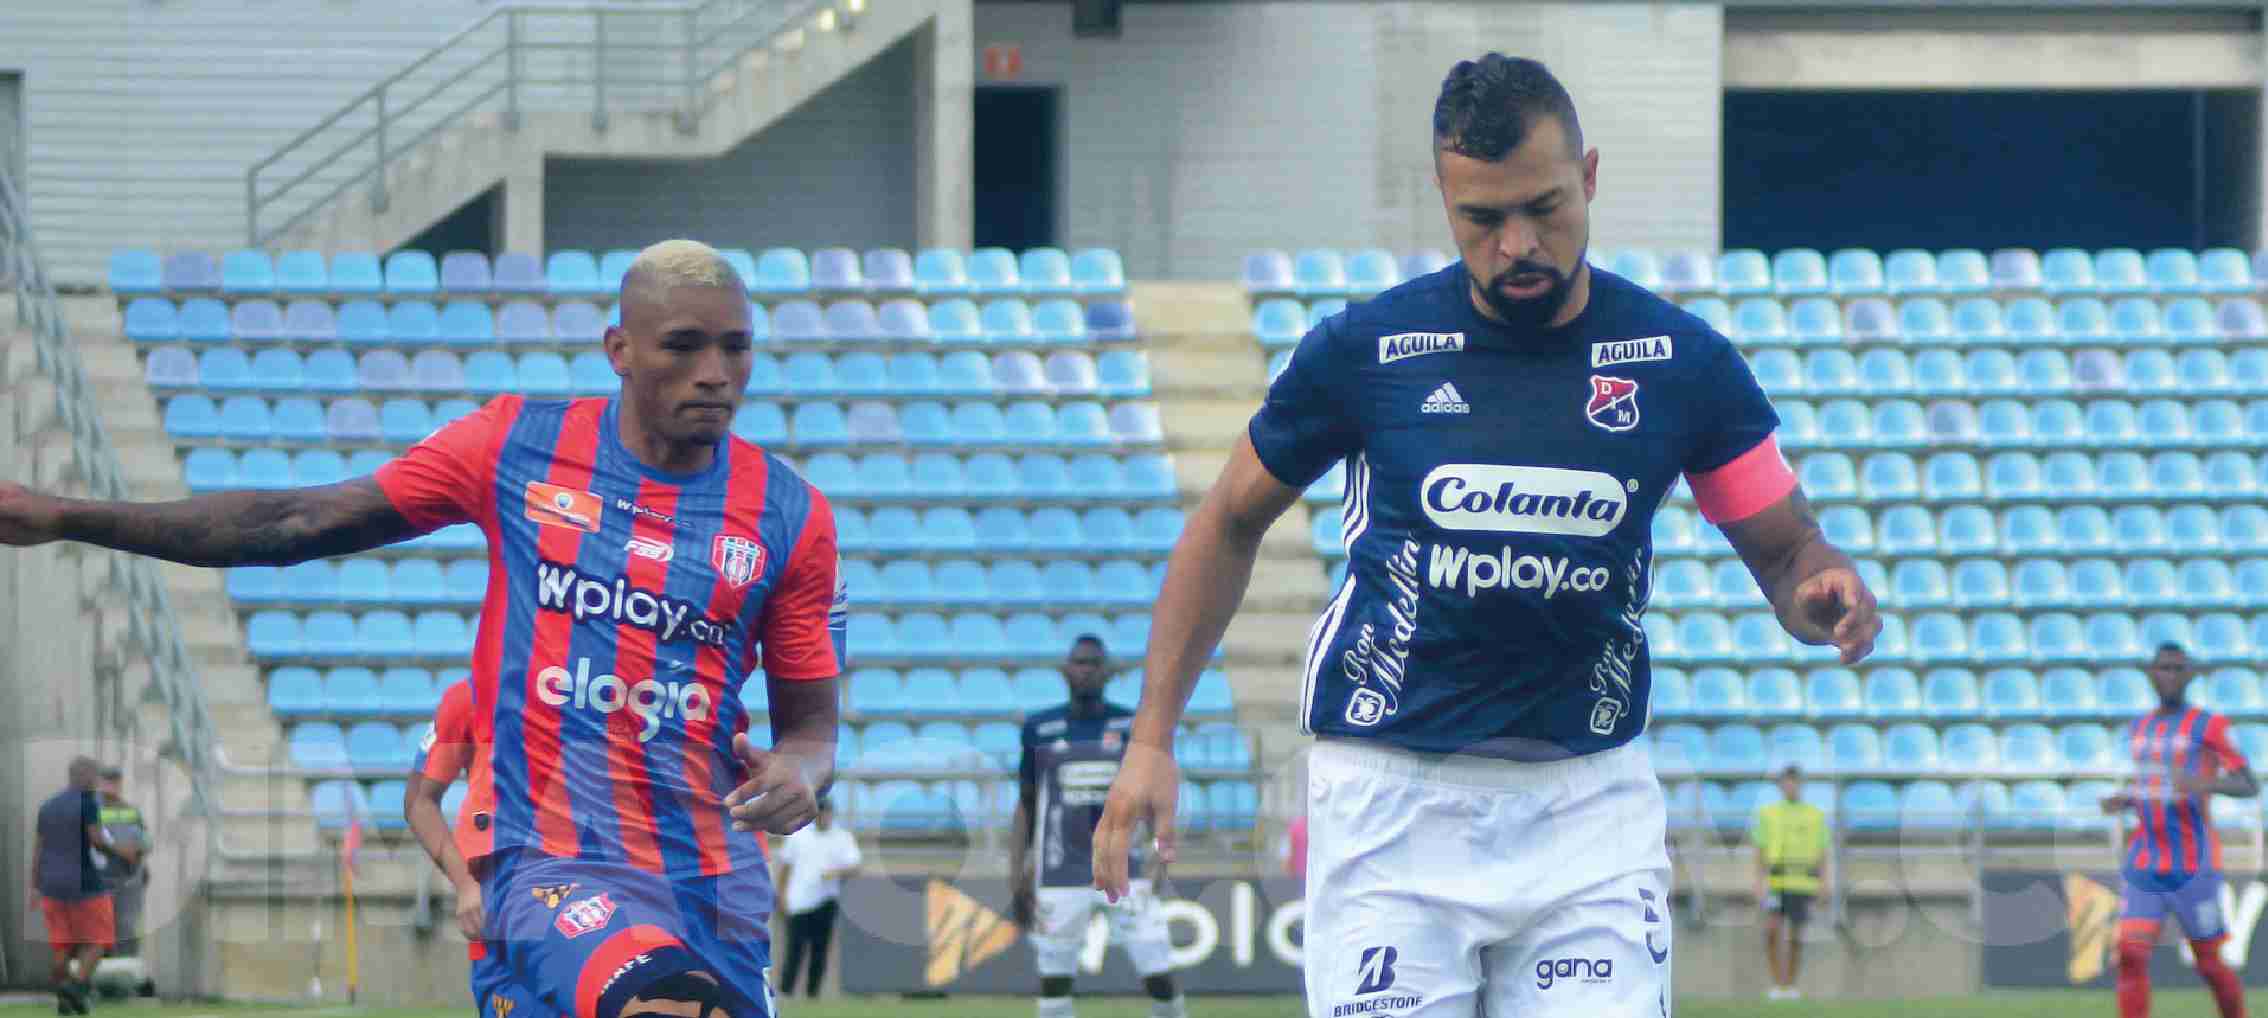 Medellín vs. Unión Magdalena fecha 20 de la Liga: ¿Tendrá TV o no?